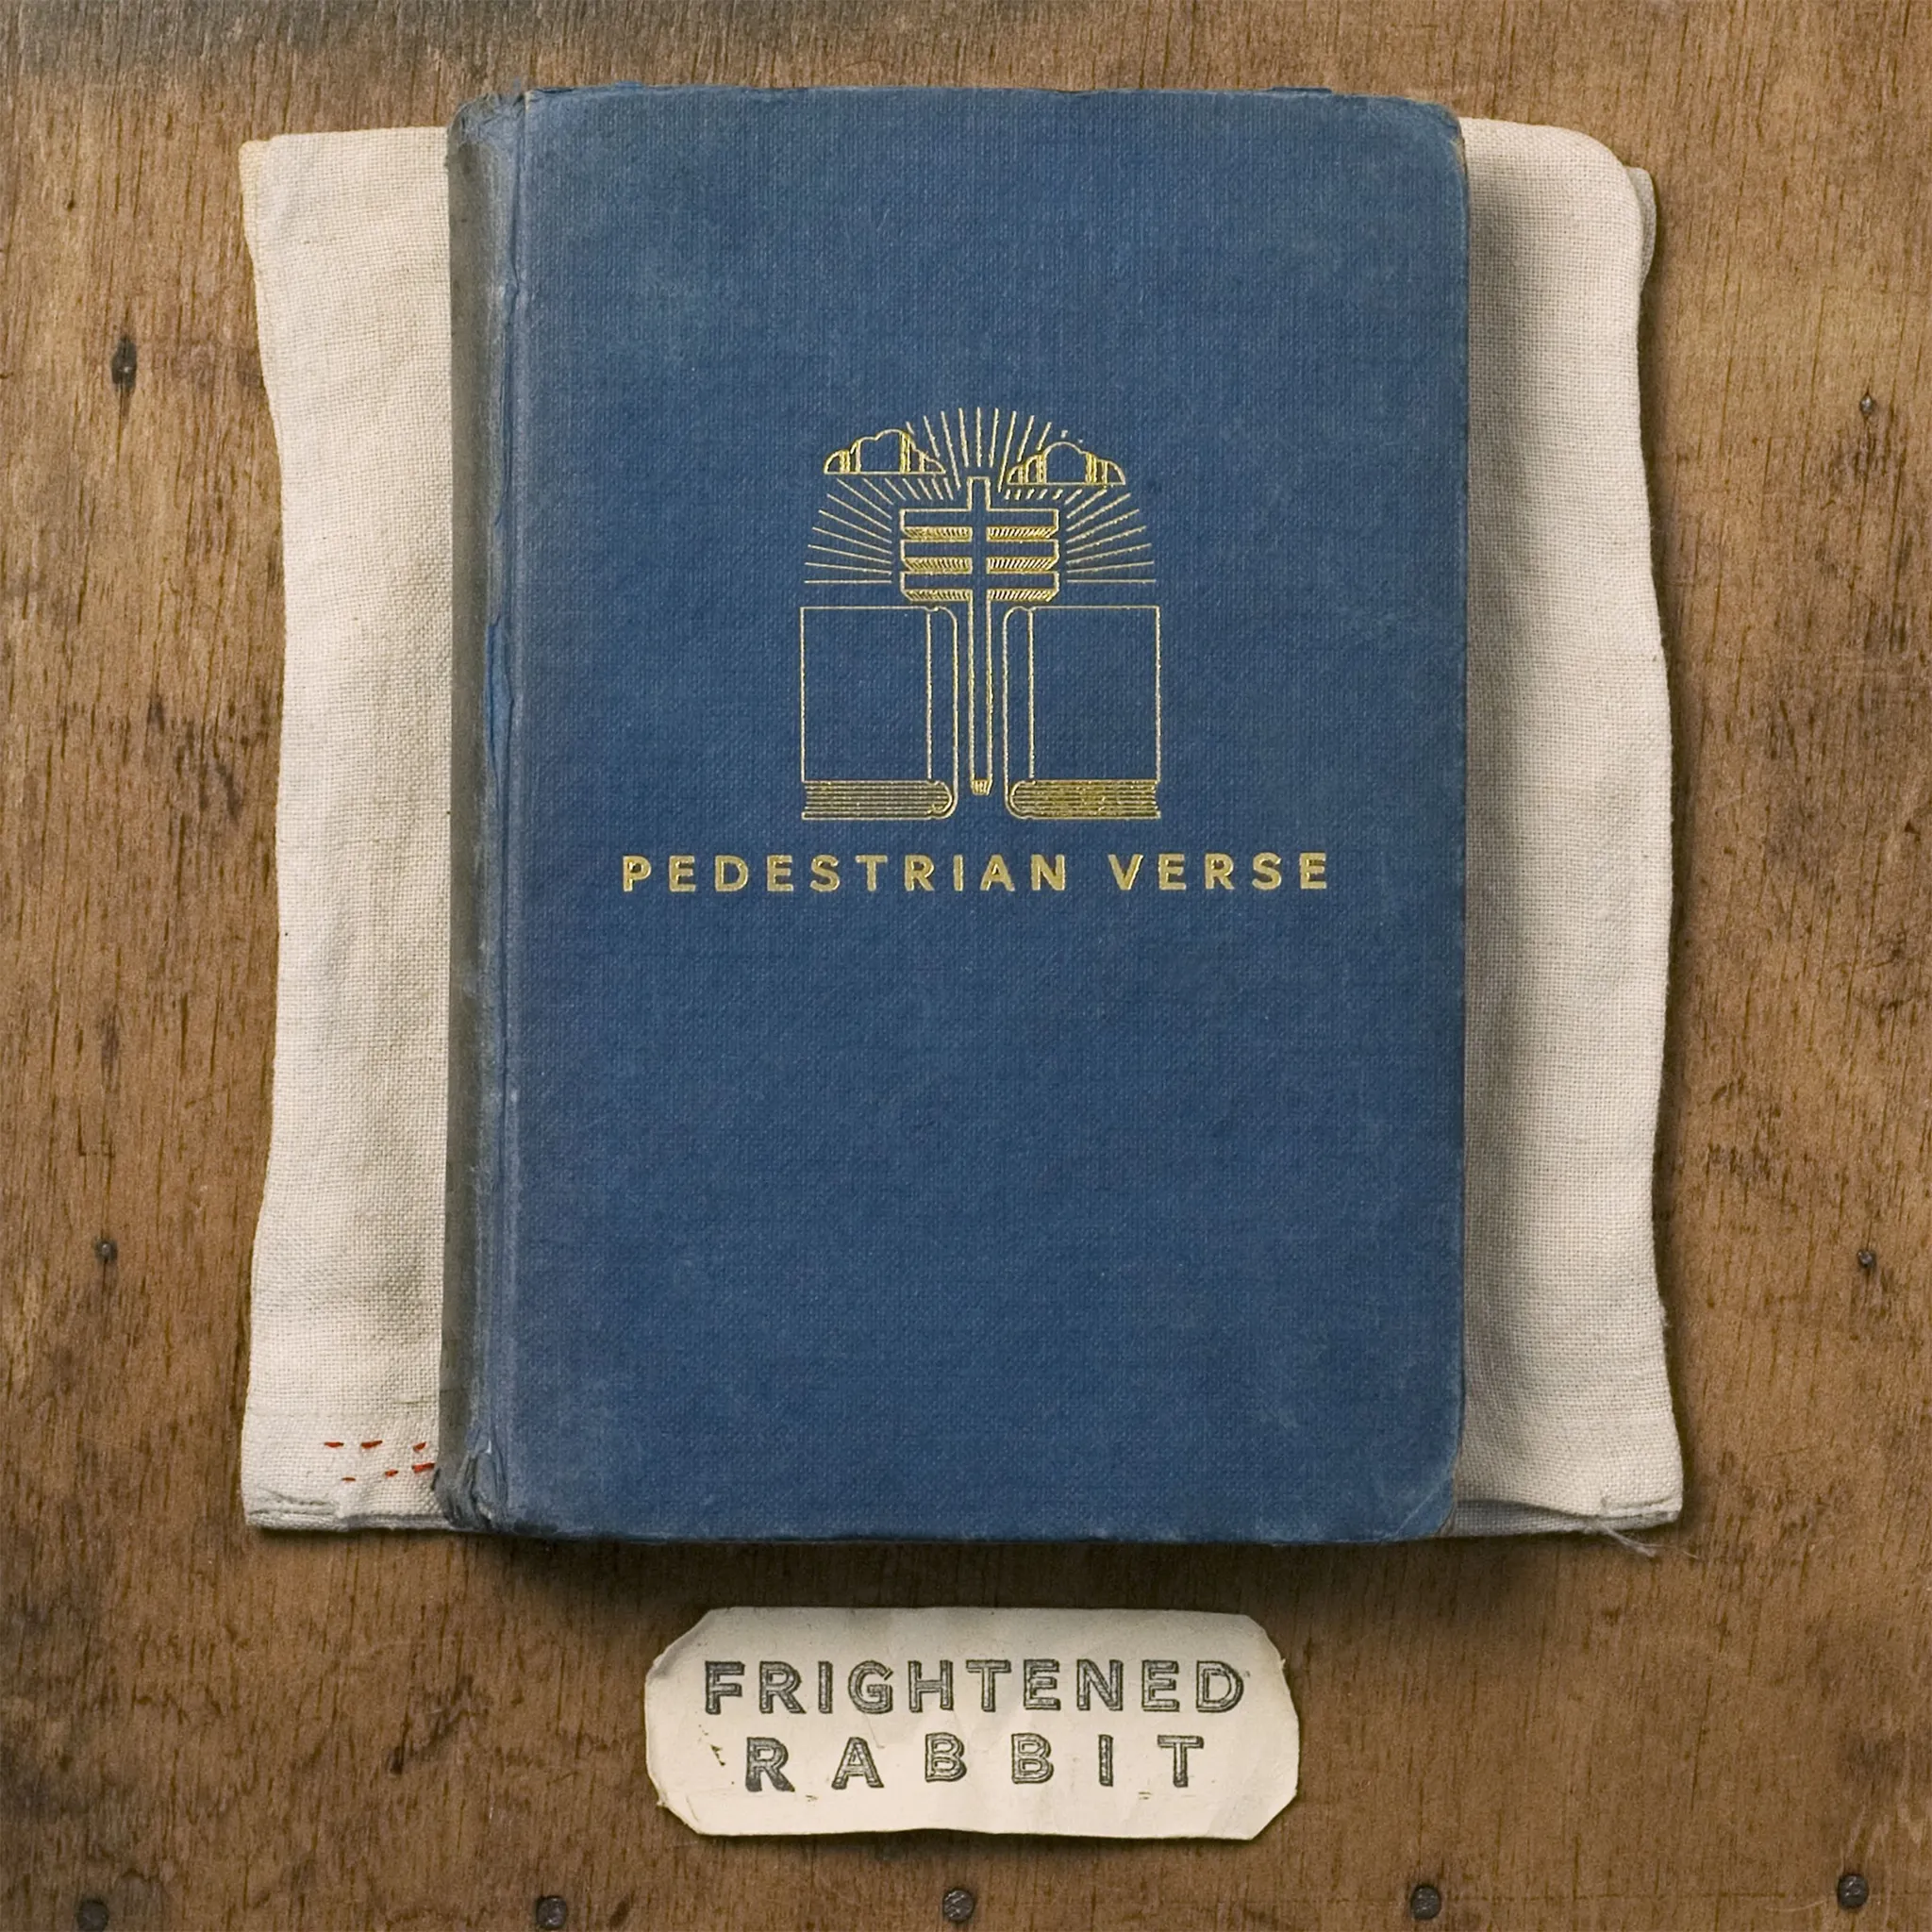 Frightened Rabbit - Pedestrian Verse (10th Anniversary Edition) artwork